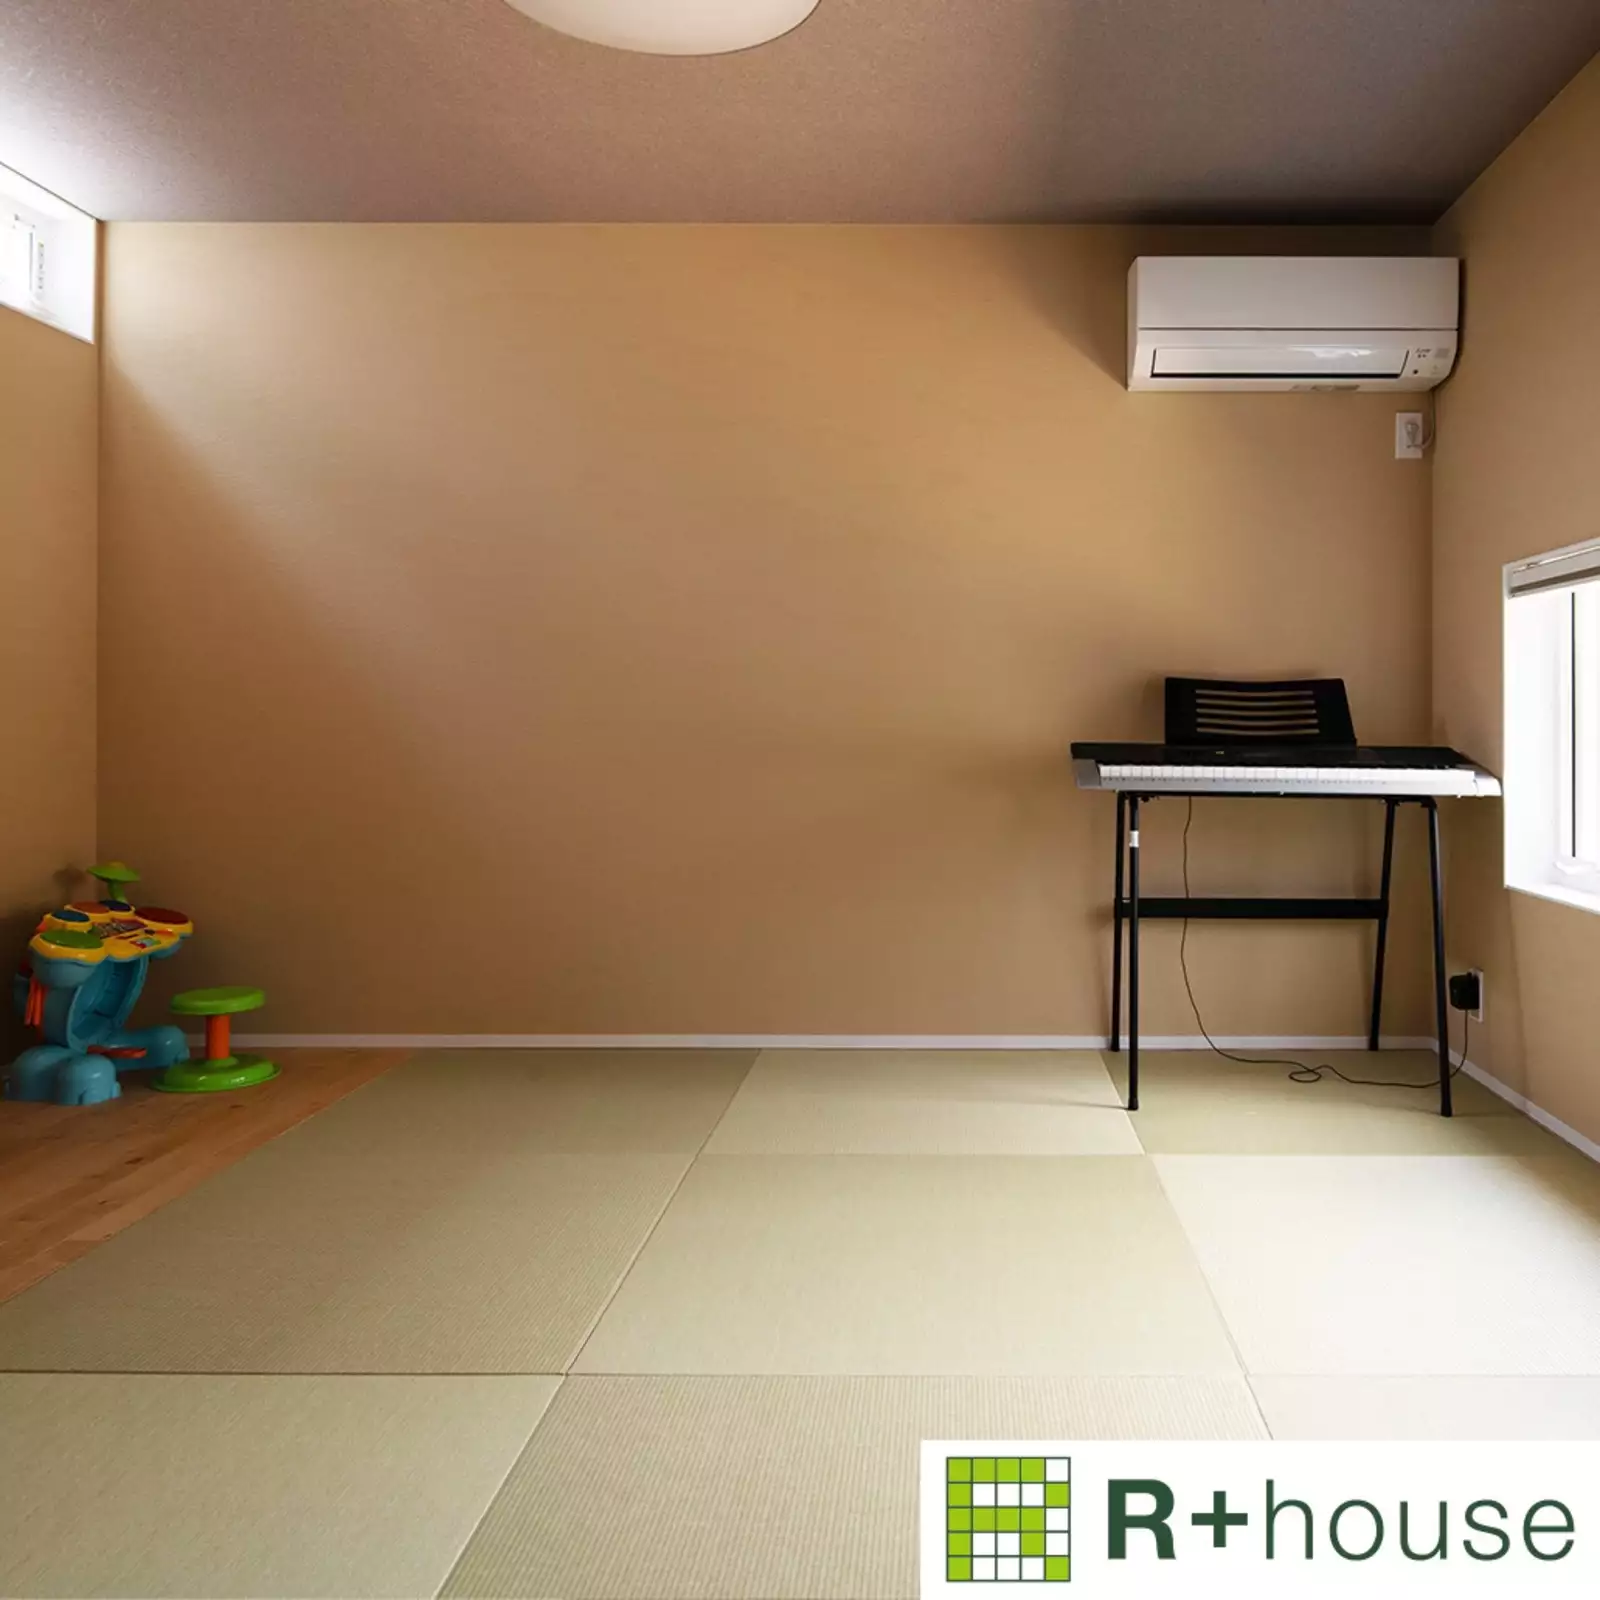 R+houseの物件の畳スペースの写真です。正方形の畳が向きを交互に並べられ、市松模様のようになっている。